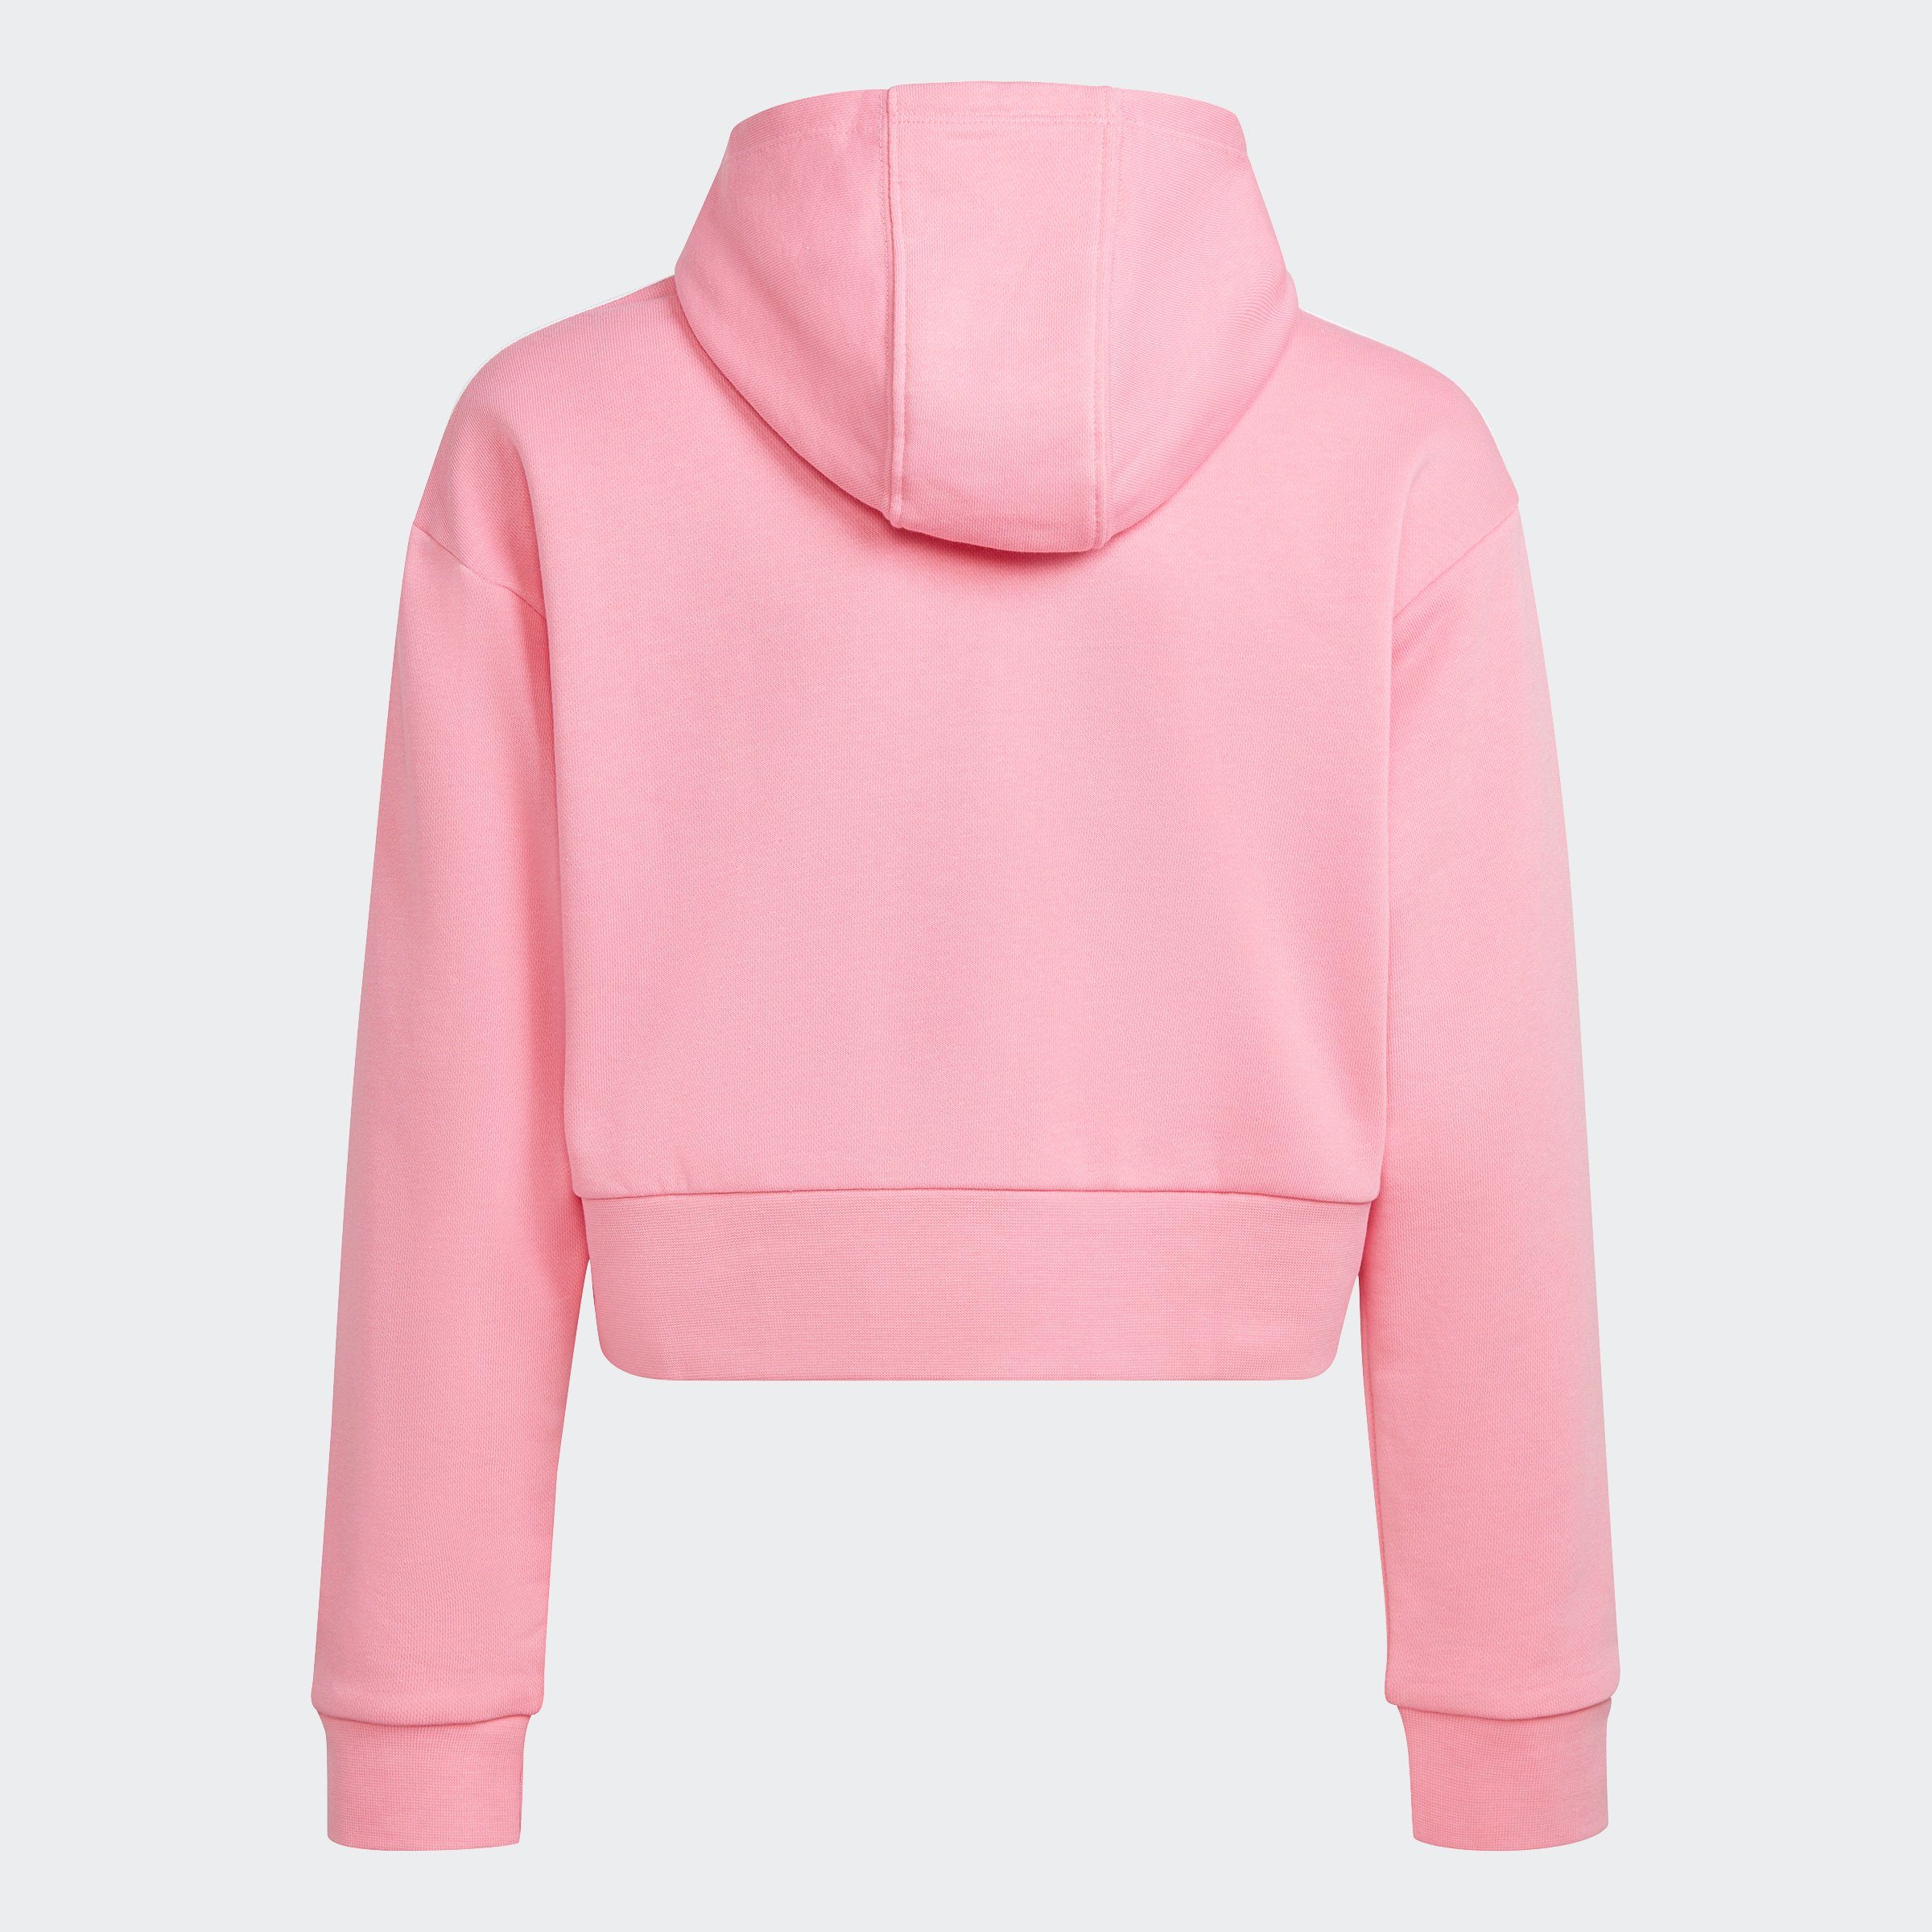 adidas Originals Sweatshirt ADICOLOR Pink HOODIE CROPPED Bliss